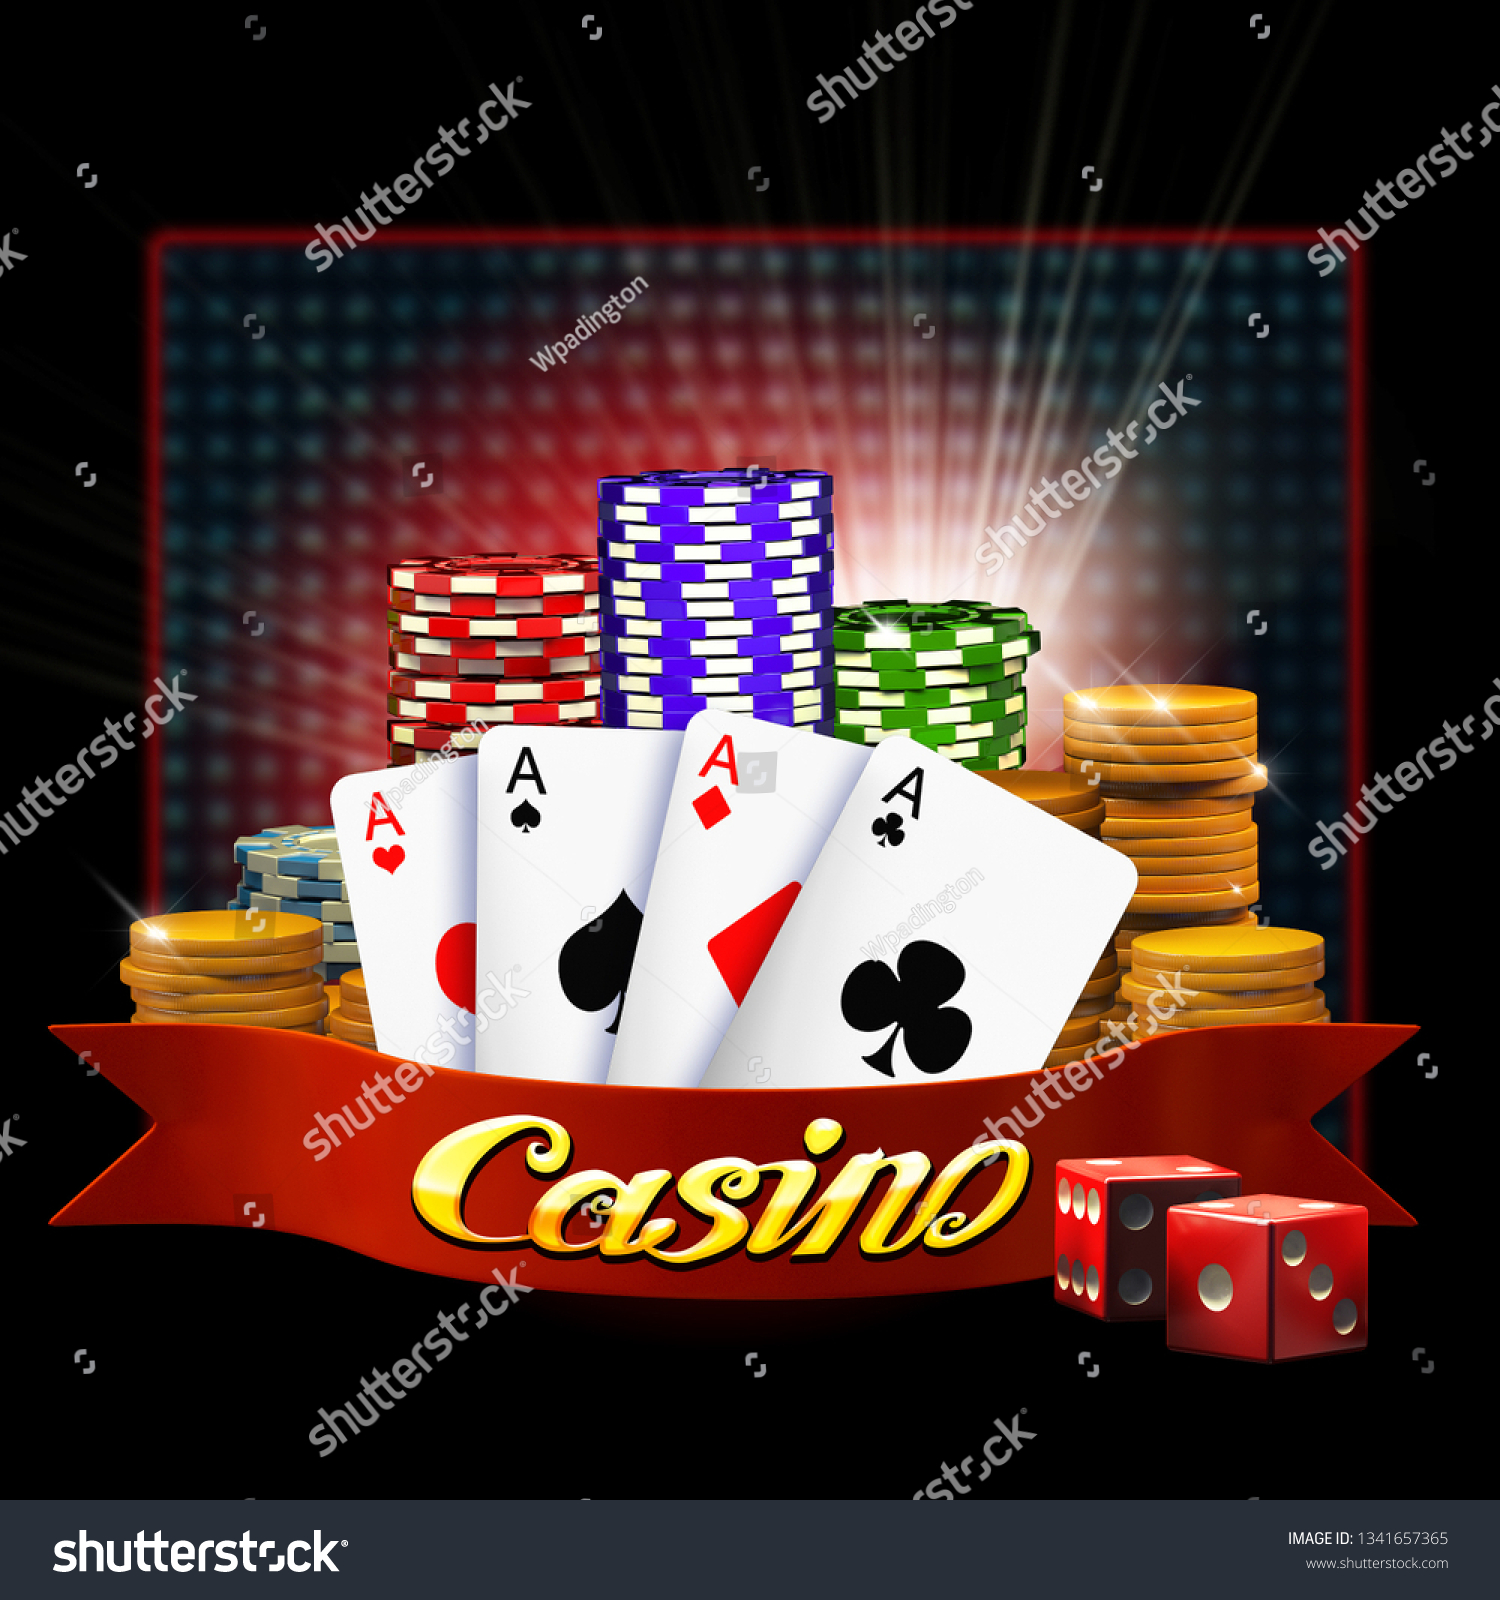 Mobile Casino Background Poker Online Application Stock Illustration  1341657365 | Shutterstock